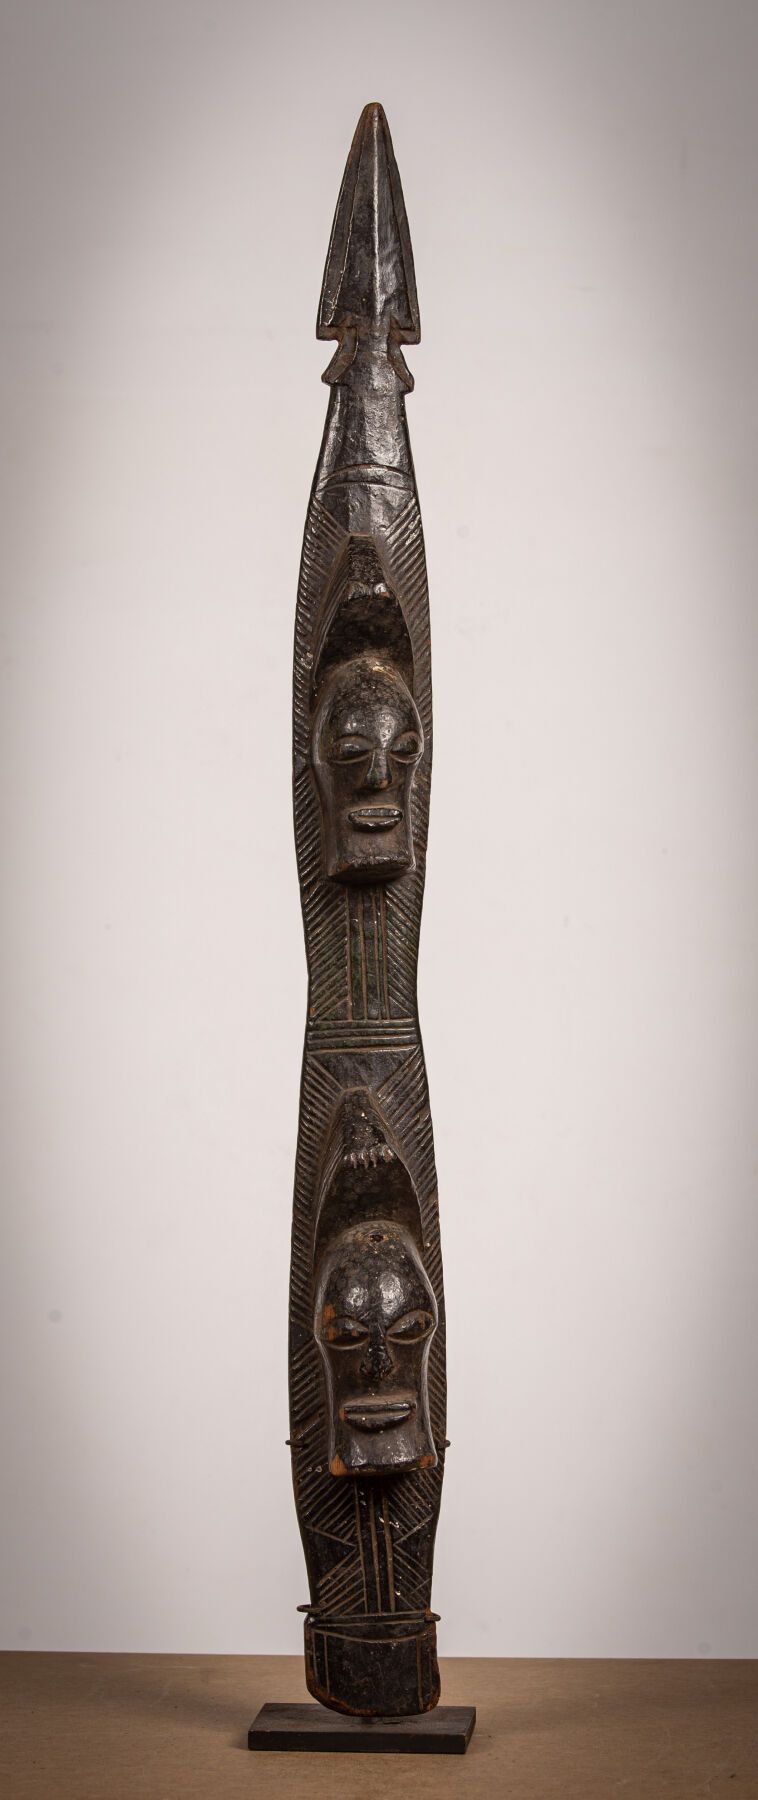 Null 松耶（刚果民主共和国）。 
木雕雕塑，为殖民时代的副本。
高_69厘米，宽_9厘米，长_7厘米